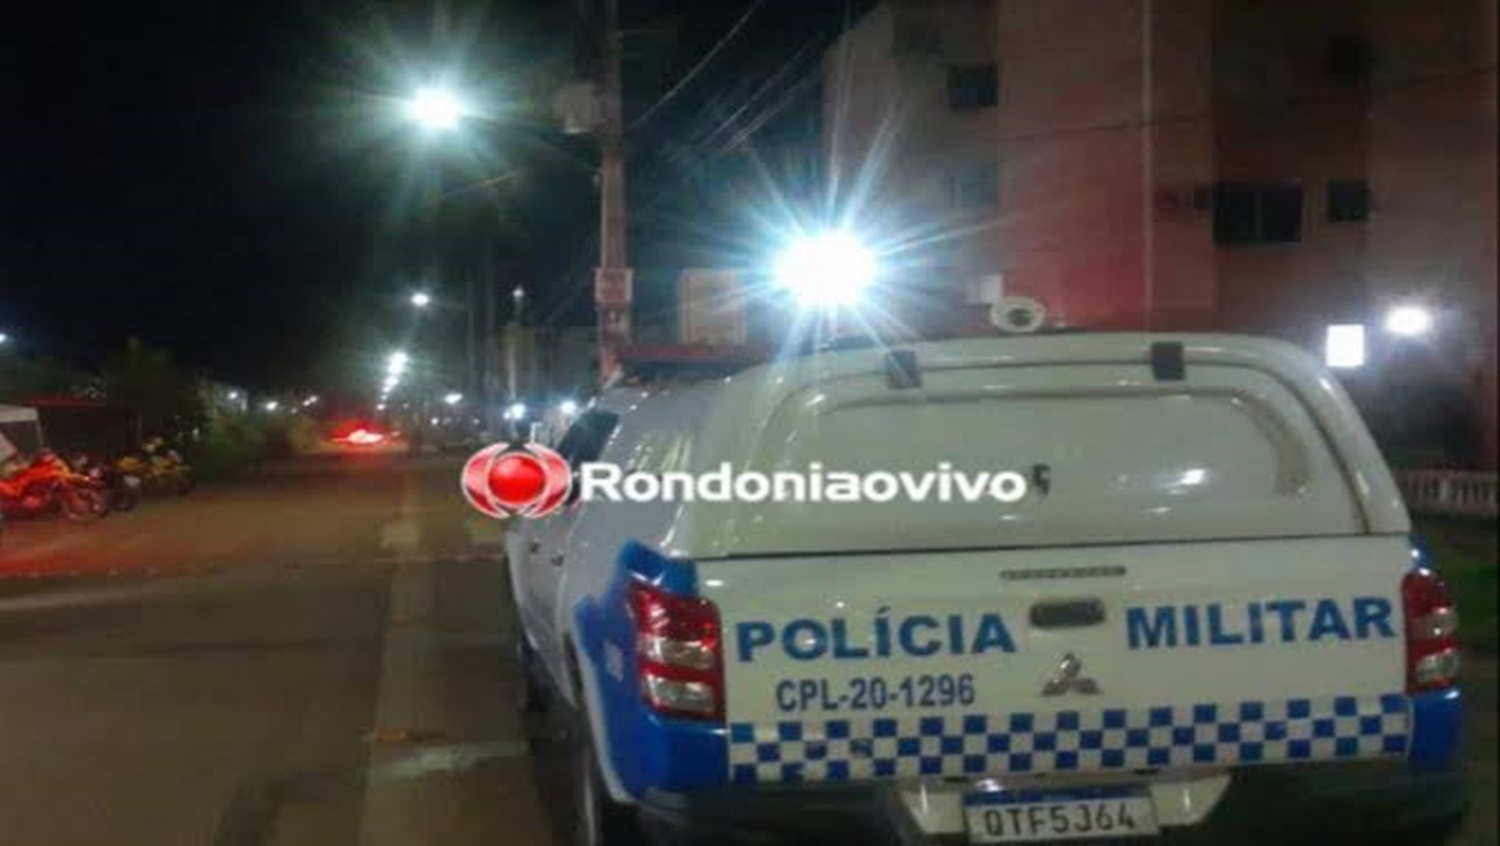 ROUBO FRUSTRADO: Enfermeiro troca tiros com criminosos durante assalto em residência